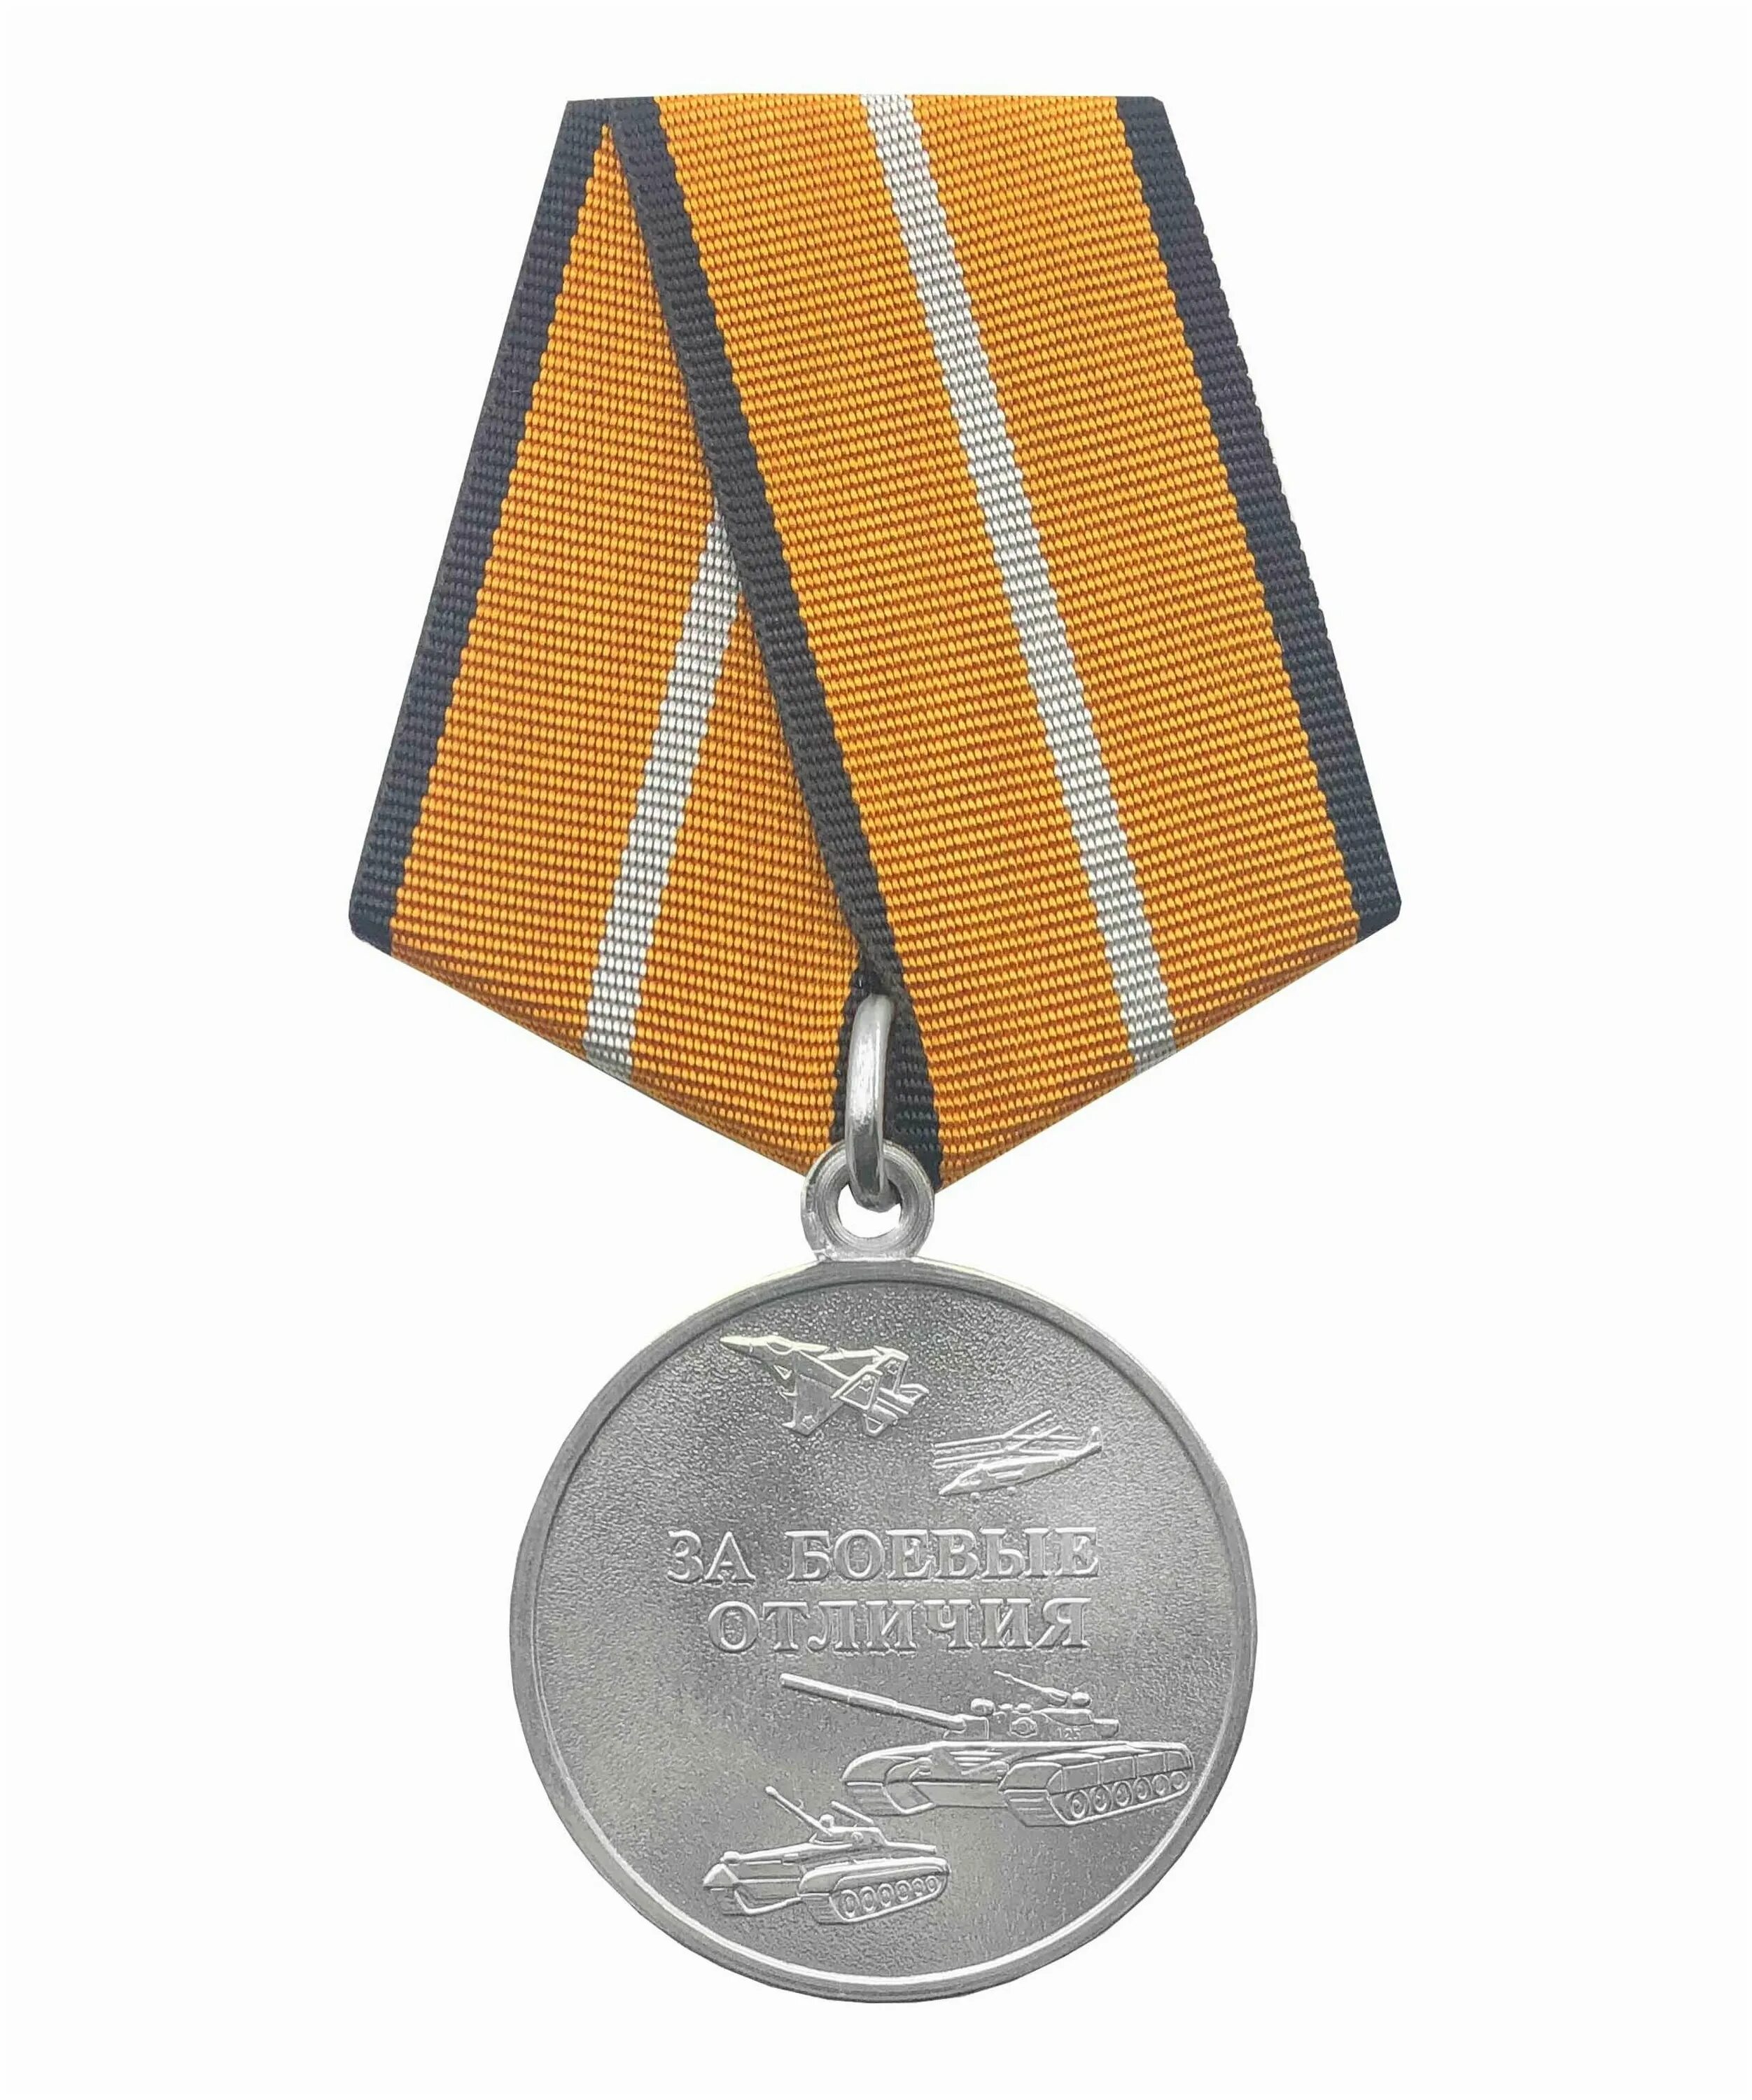 Медаль за боевые отличия. Медаль за боевые отличия Министерства обороны. Медаль за боевые отличия МО РФ. Медаль за боевые заслуги Министерства обороны.